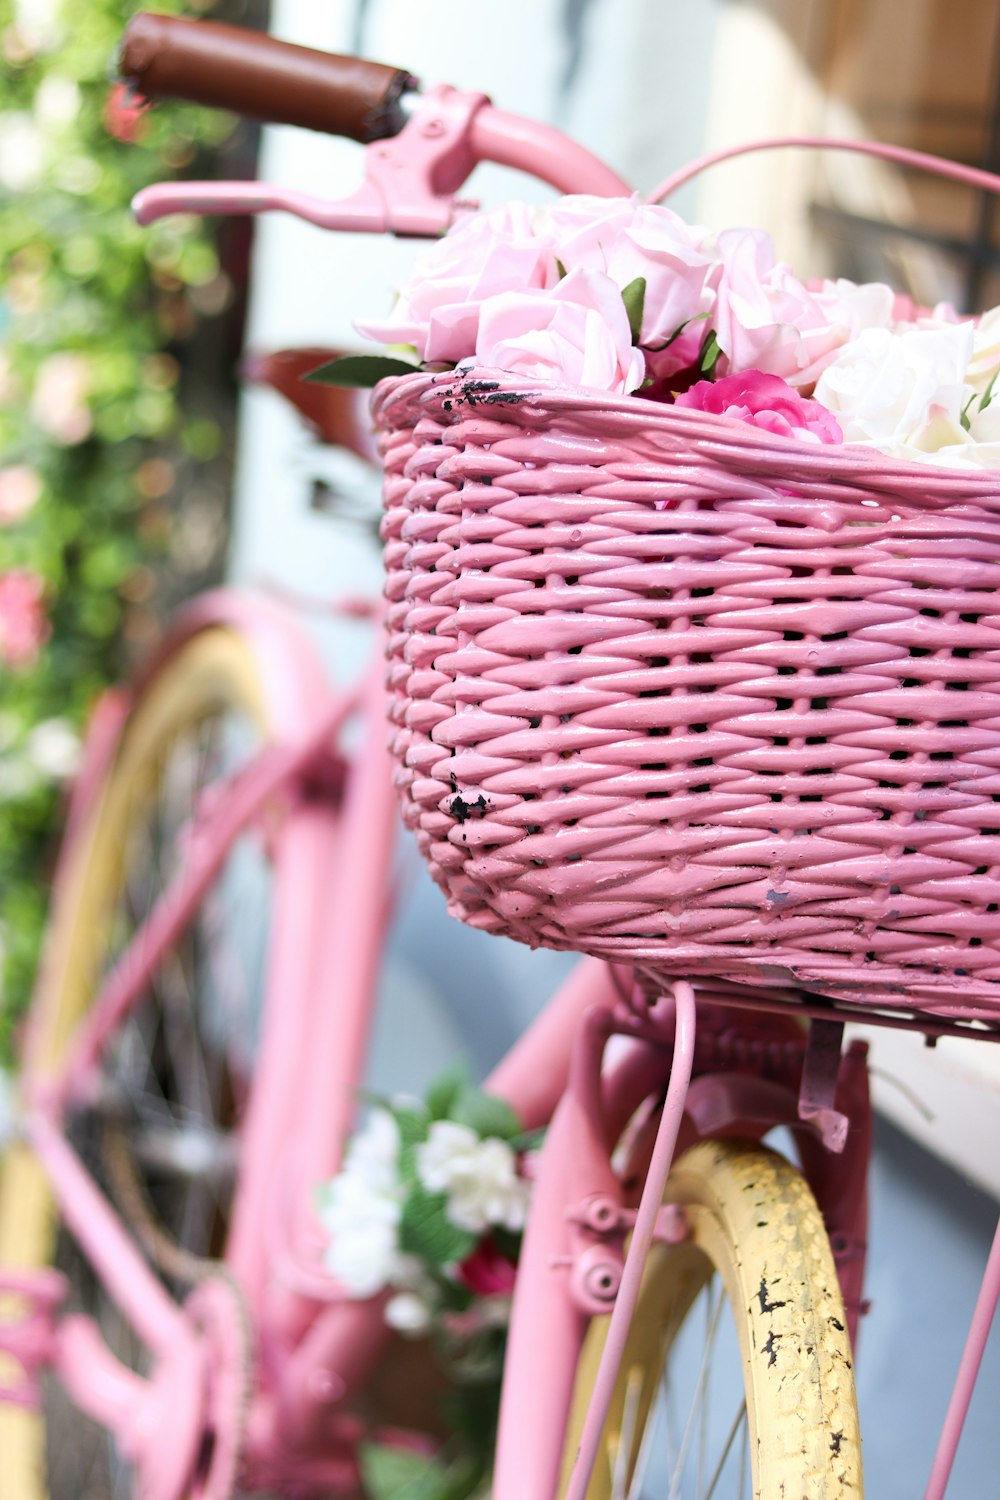 Panier tissé rose sur vélo jaune